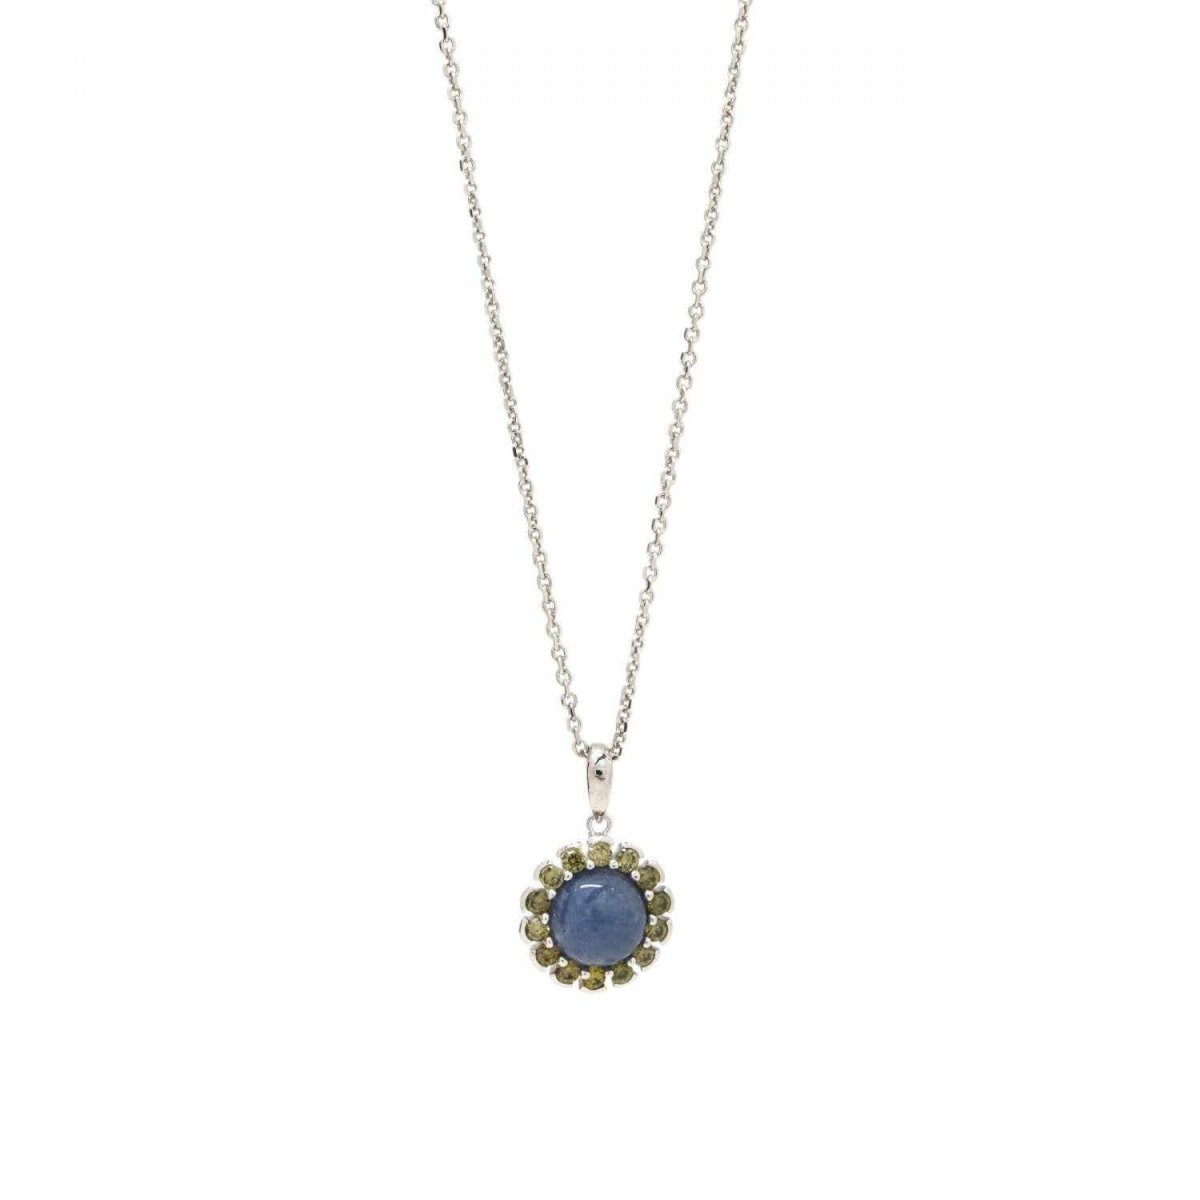 Collar · Collares con piedras en plata diseño floral tono zafiro azul